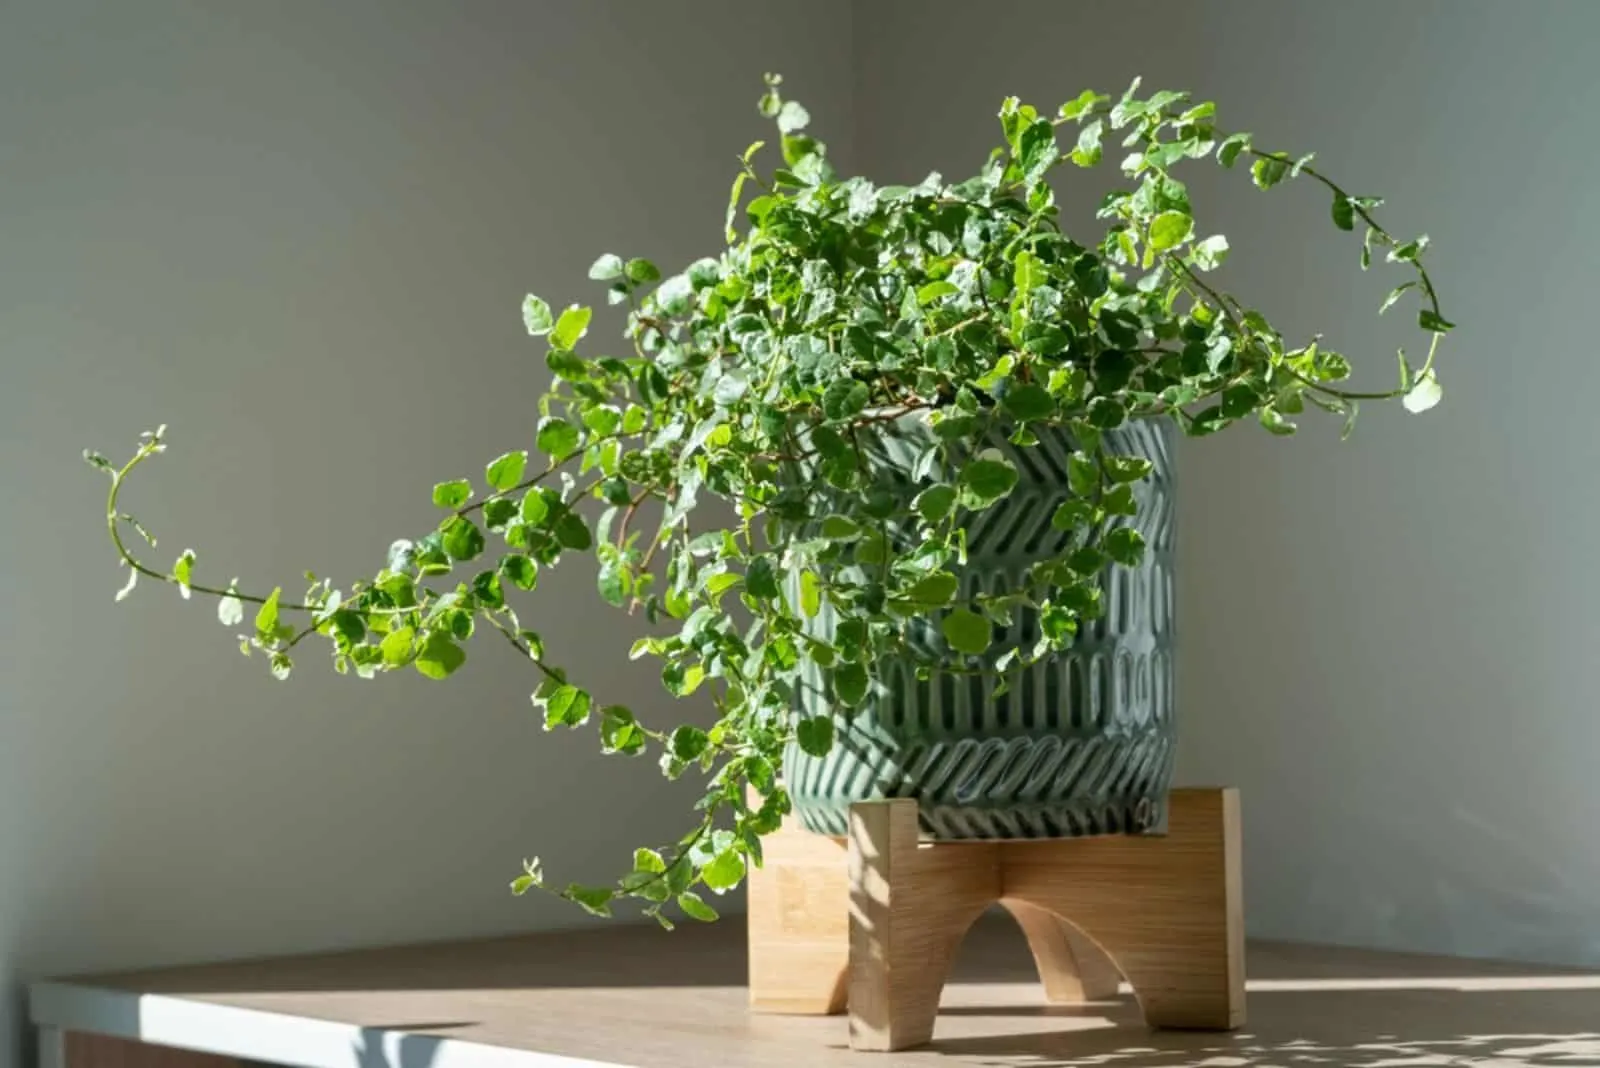  Ficus Pumila plant in ceramic planter at home